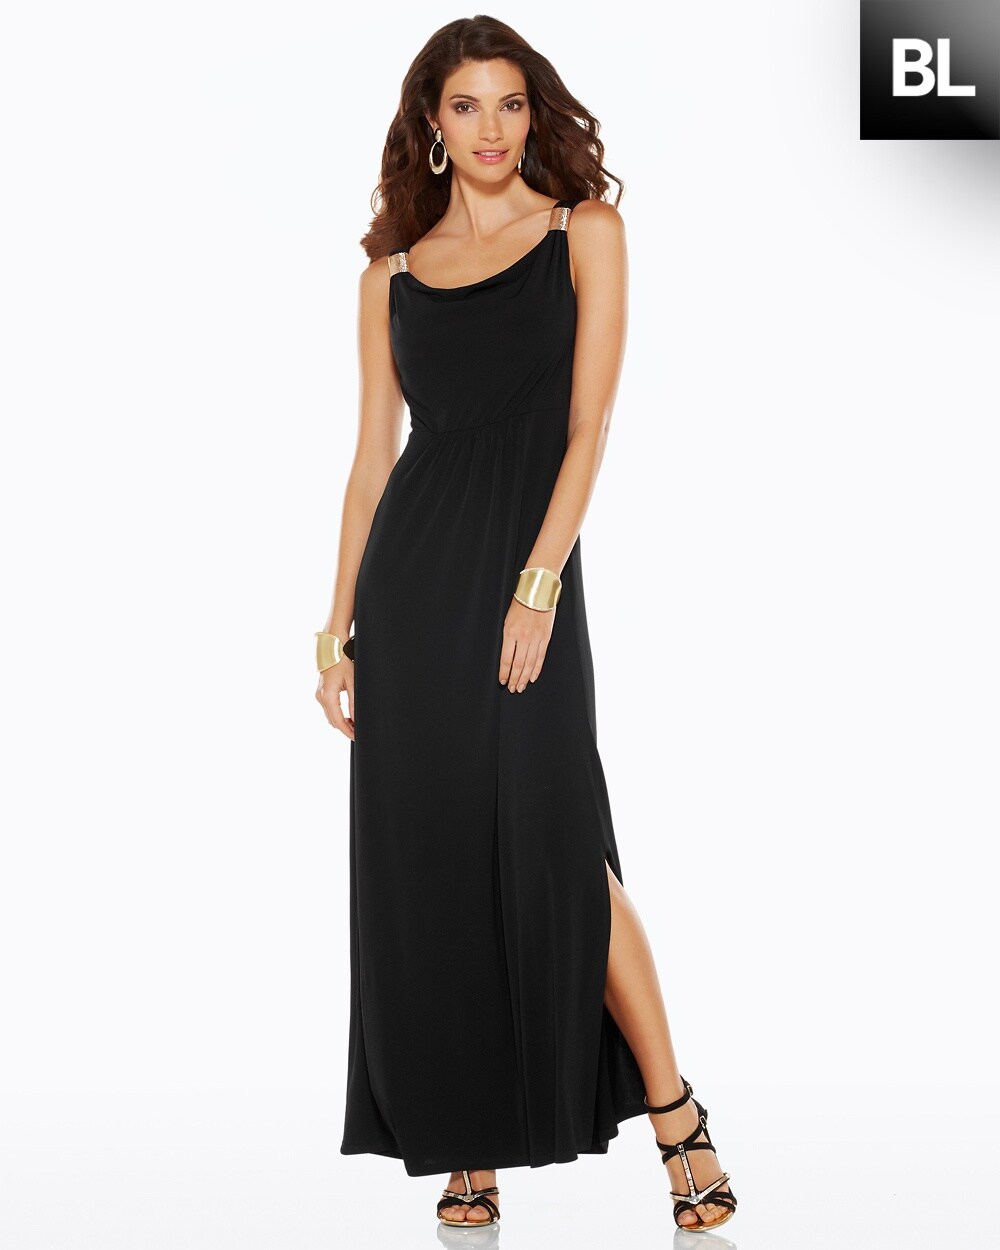 Buy > chico black dress > in stock